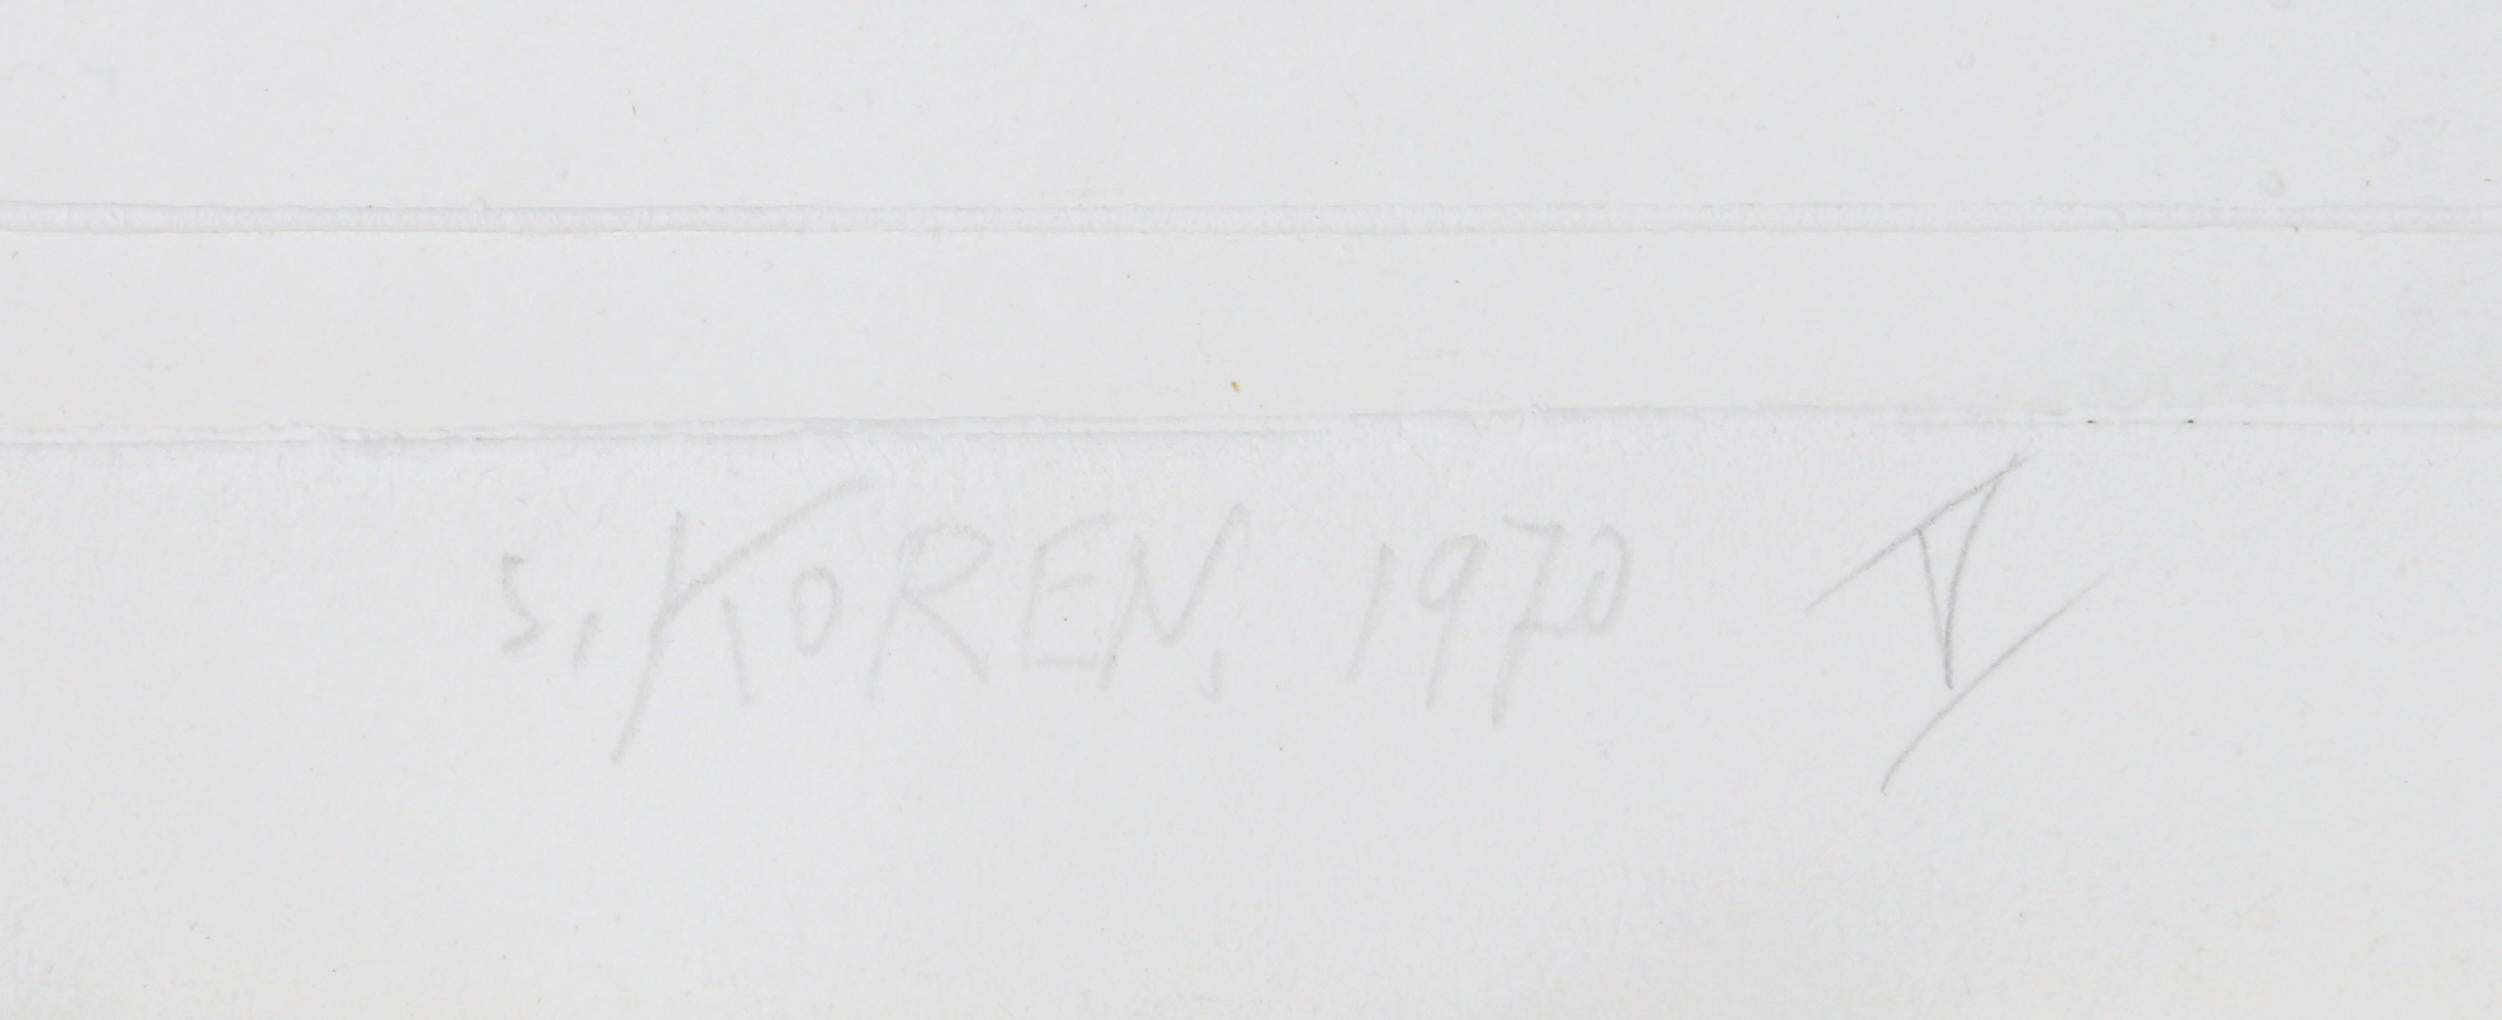 Künstler: Shlomo Koren, Deutscher (1932 - )
Titel: Unbenannt V
Jahr: 1970
Medium: Stichtiefdruck, mit Bleistift signiert und nummeriert
Auflage: 15
Größe: 26 x 20 in. (66,04 x 50,8 cm)